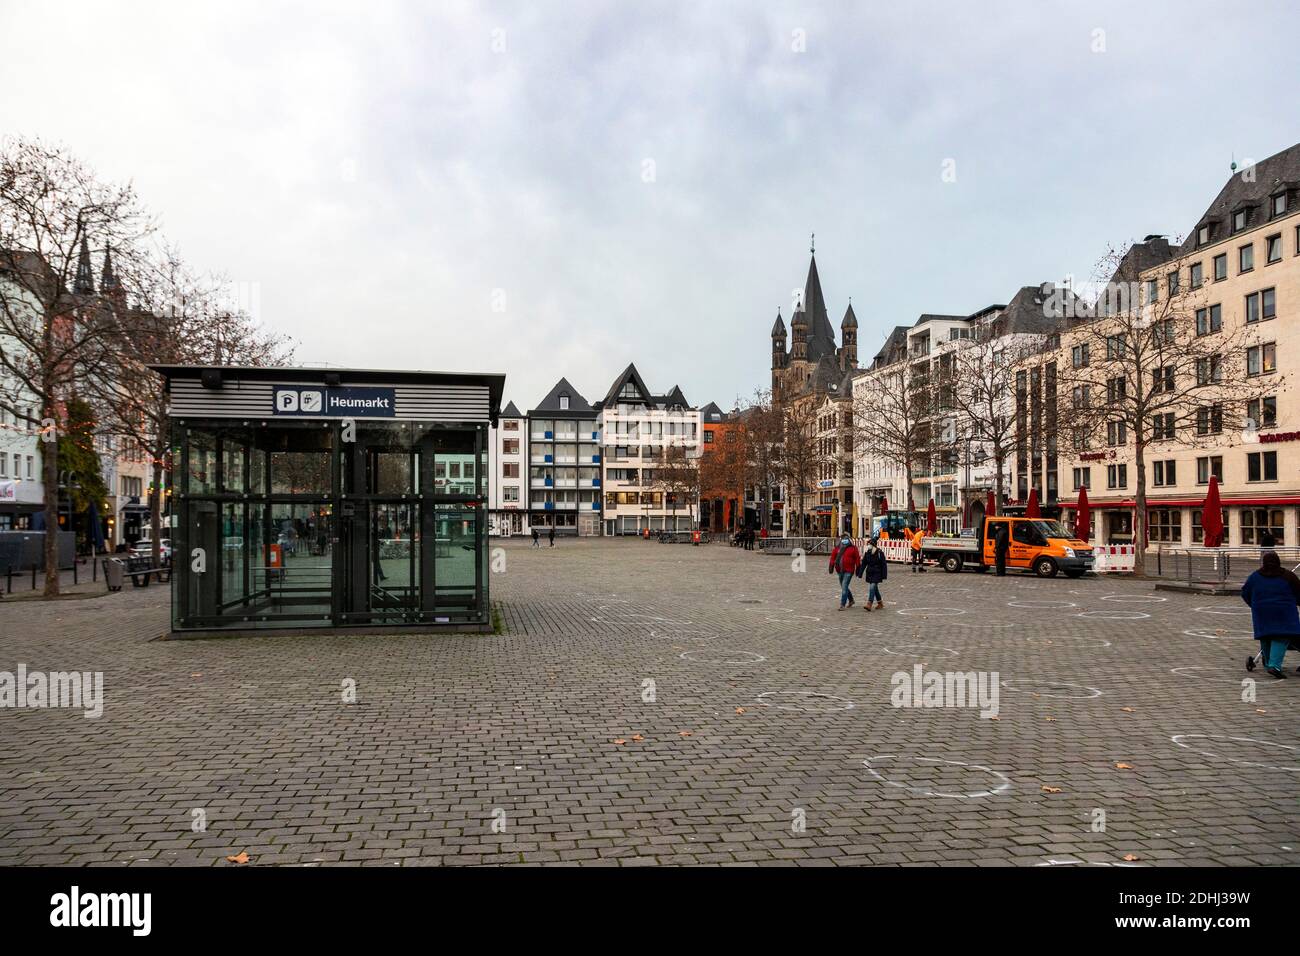 Heumarkt à Cologne, peu de passants pendant le confinement dû à la pandémie du coronavirus Banque D'Images